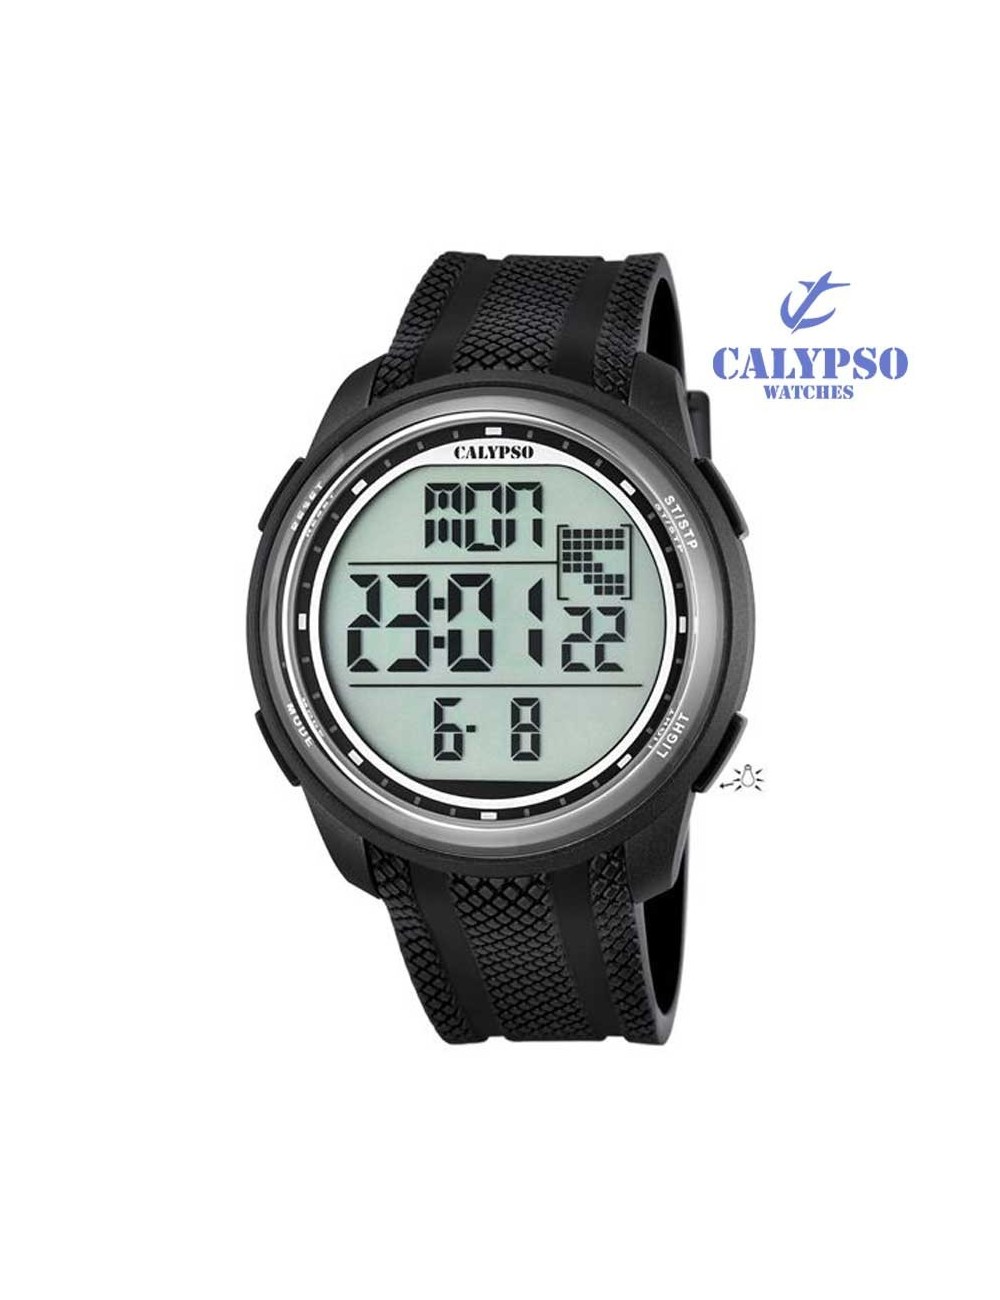 Reloj Calypso Digital Hombre Plateado y Negro K5586/2